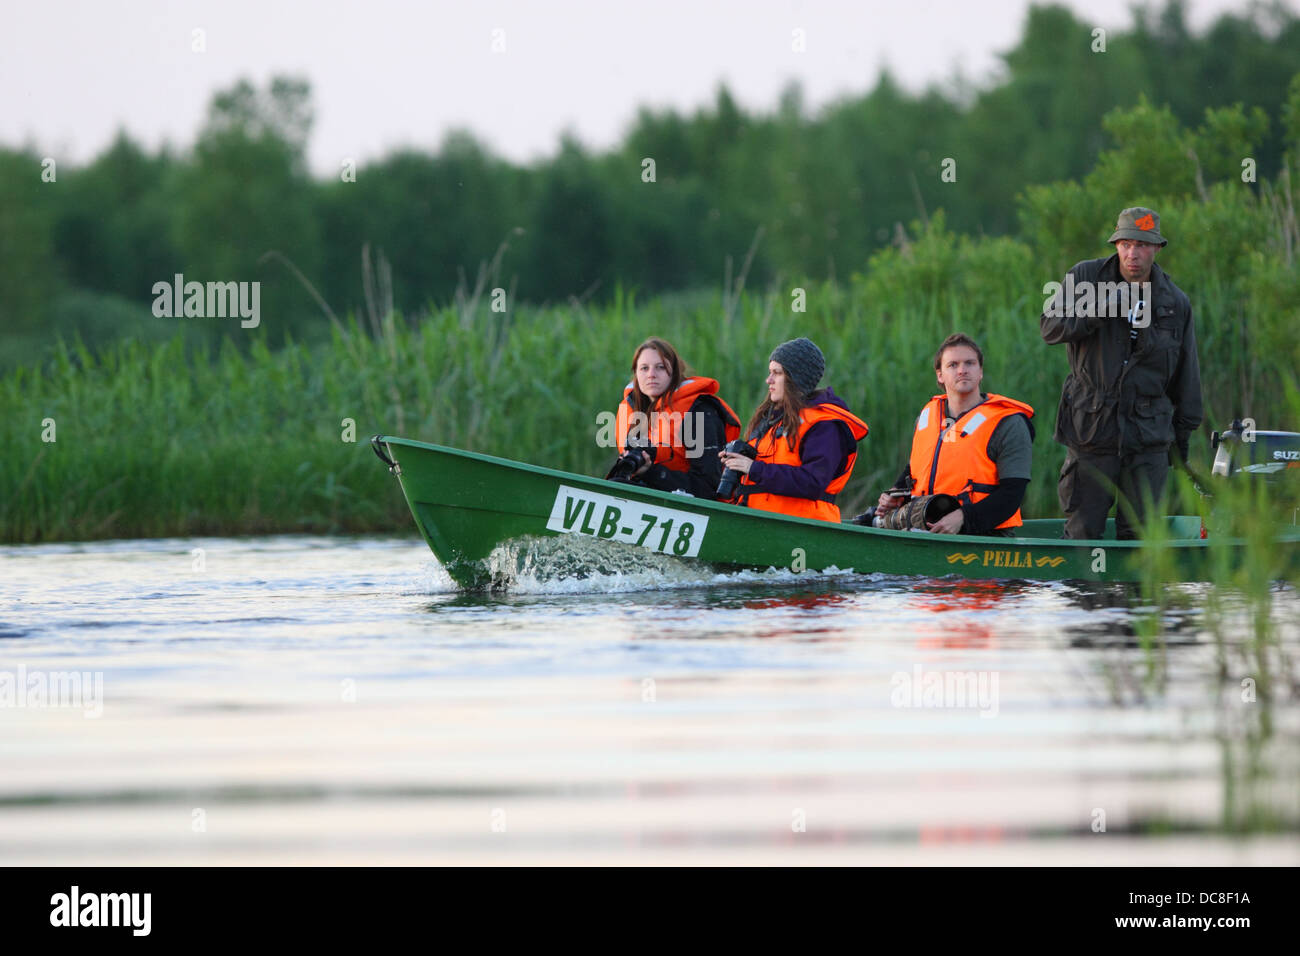 Groupe de photographes de la faune en prenant un tour de bateau, à la recherche de castors. L'Europe, l'Estonie, l'Alam-Pedja Réserve Naturelle. Banque D'Images